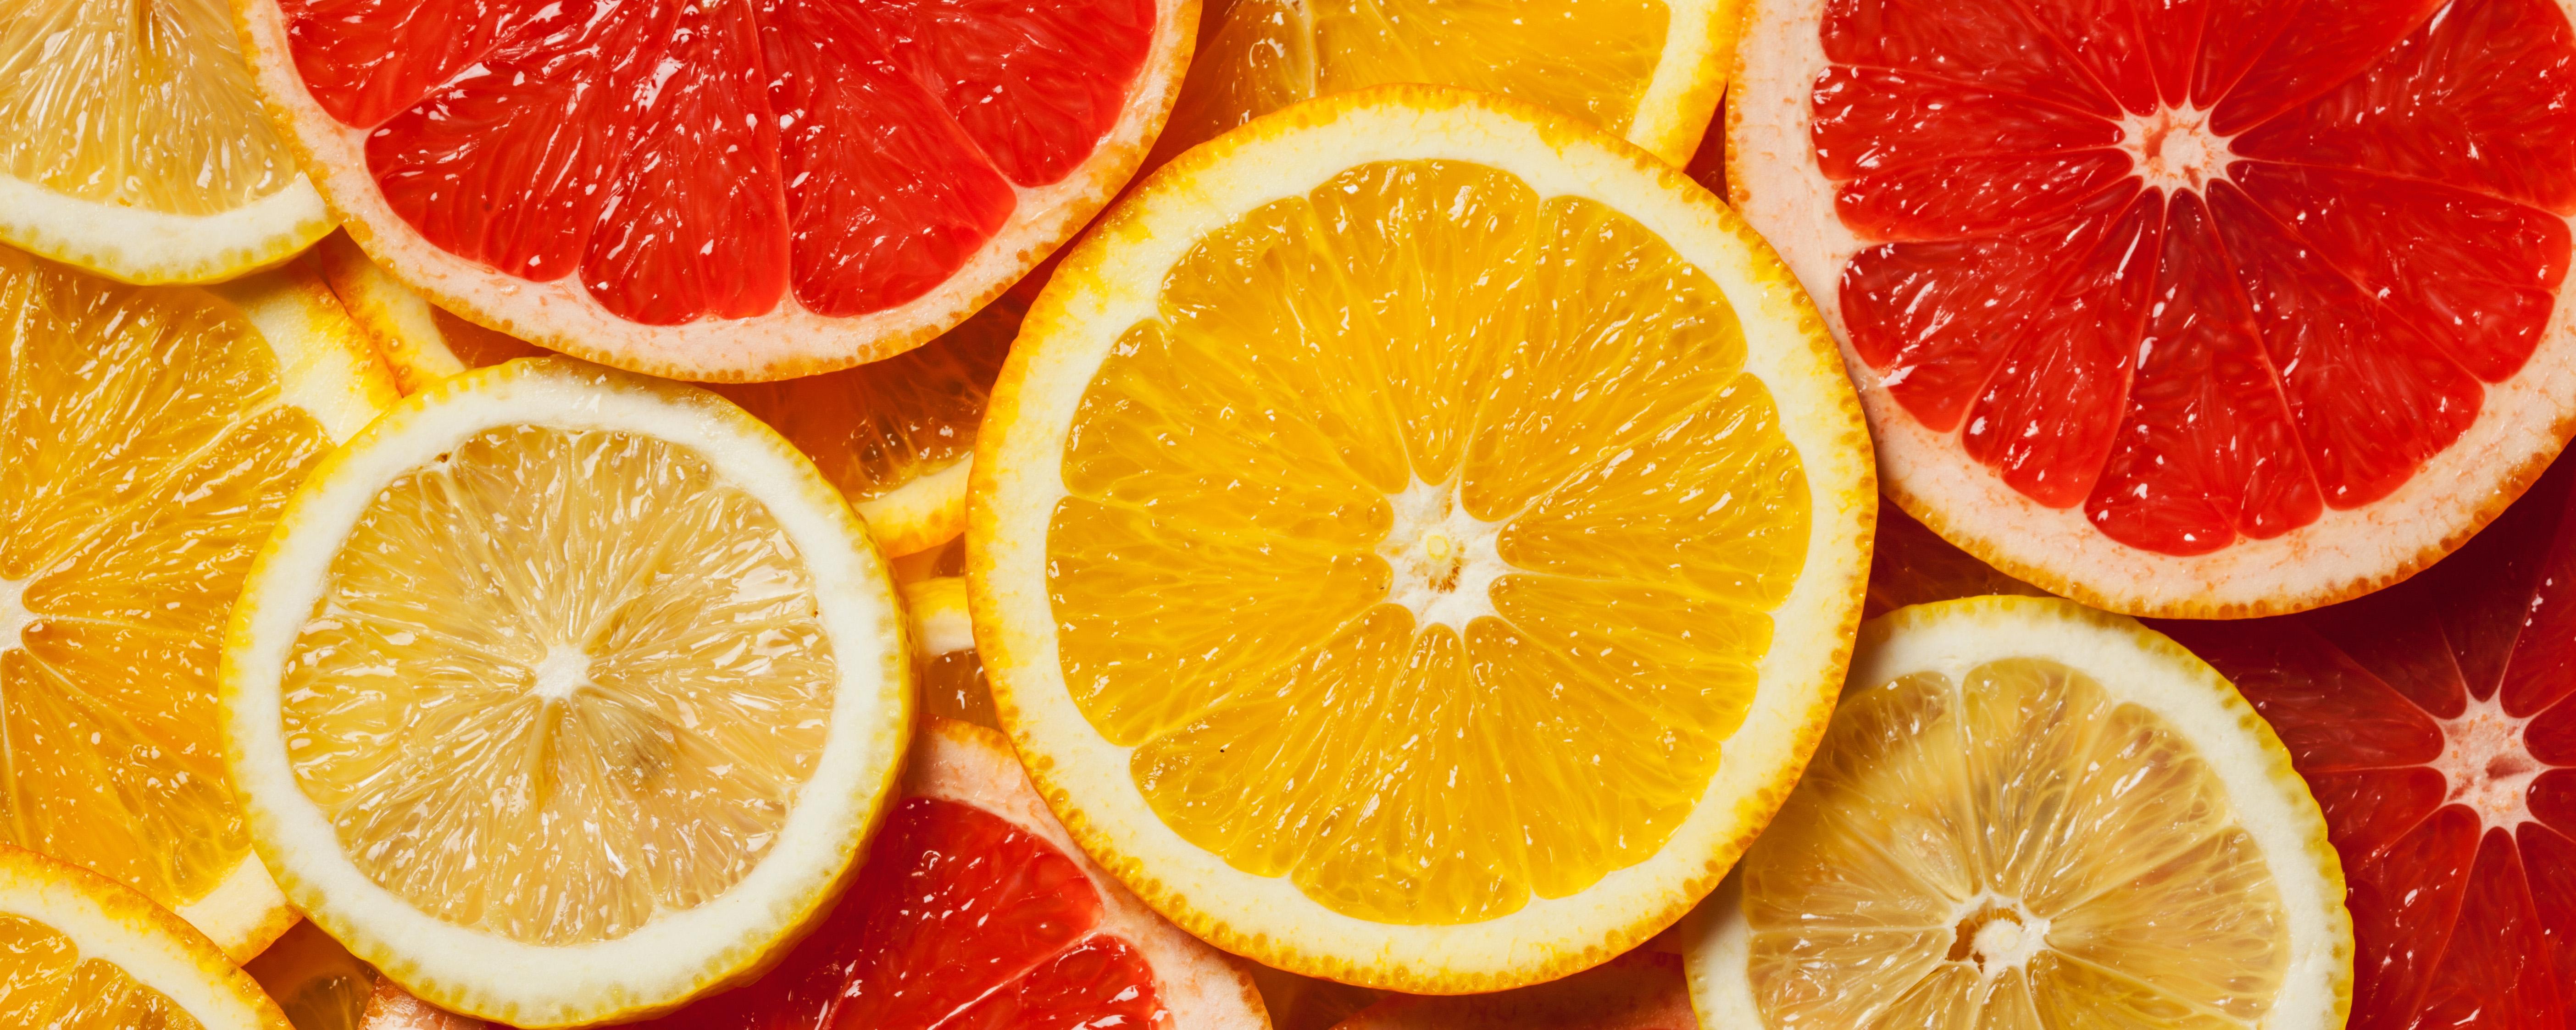 葡萄柚如何挑选 葡萄柚如何挑选汁水多甜的